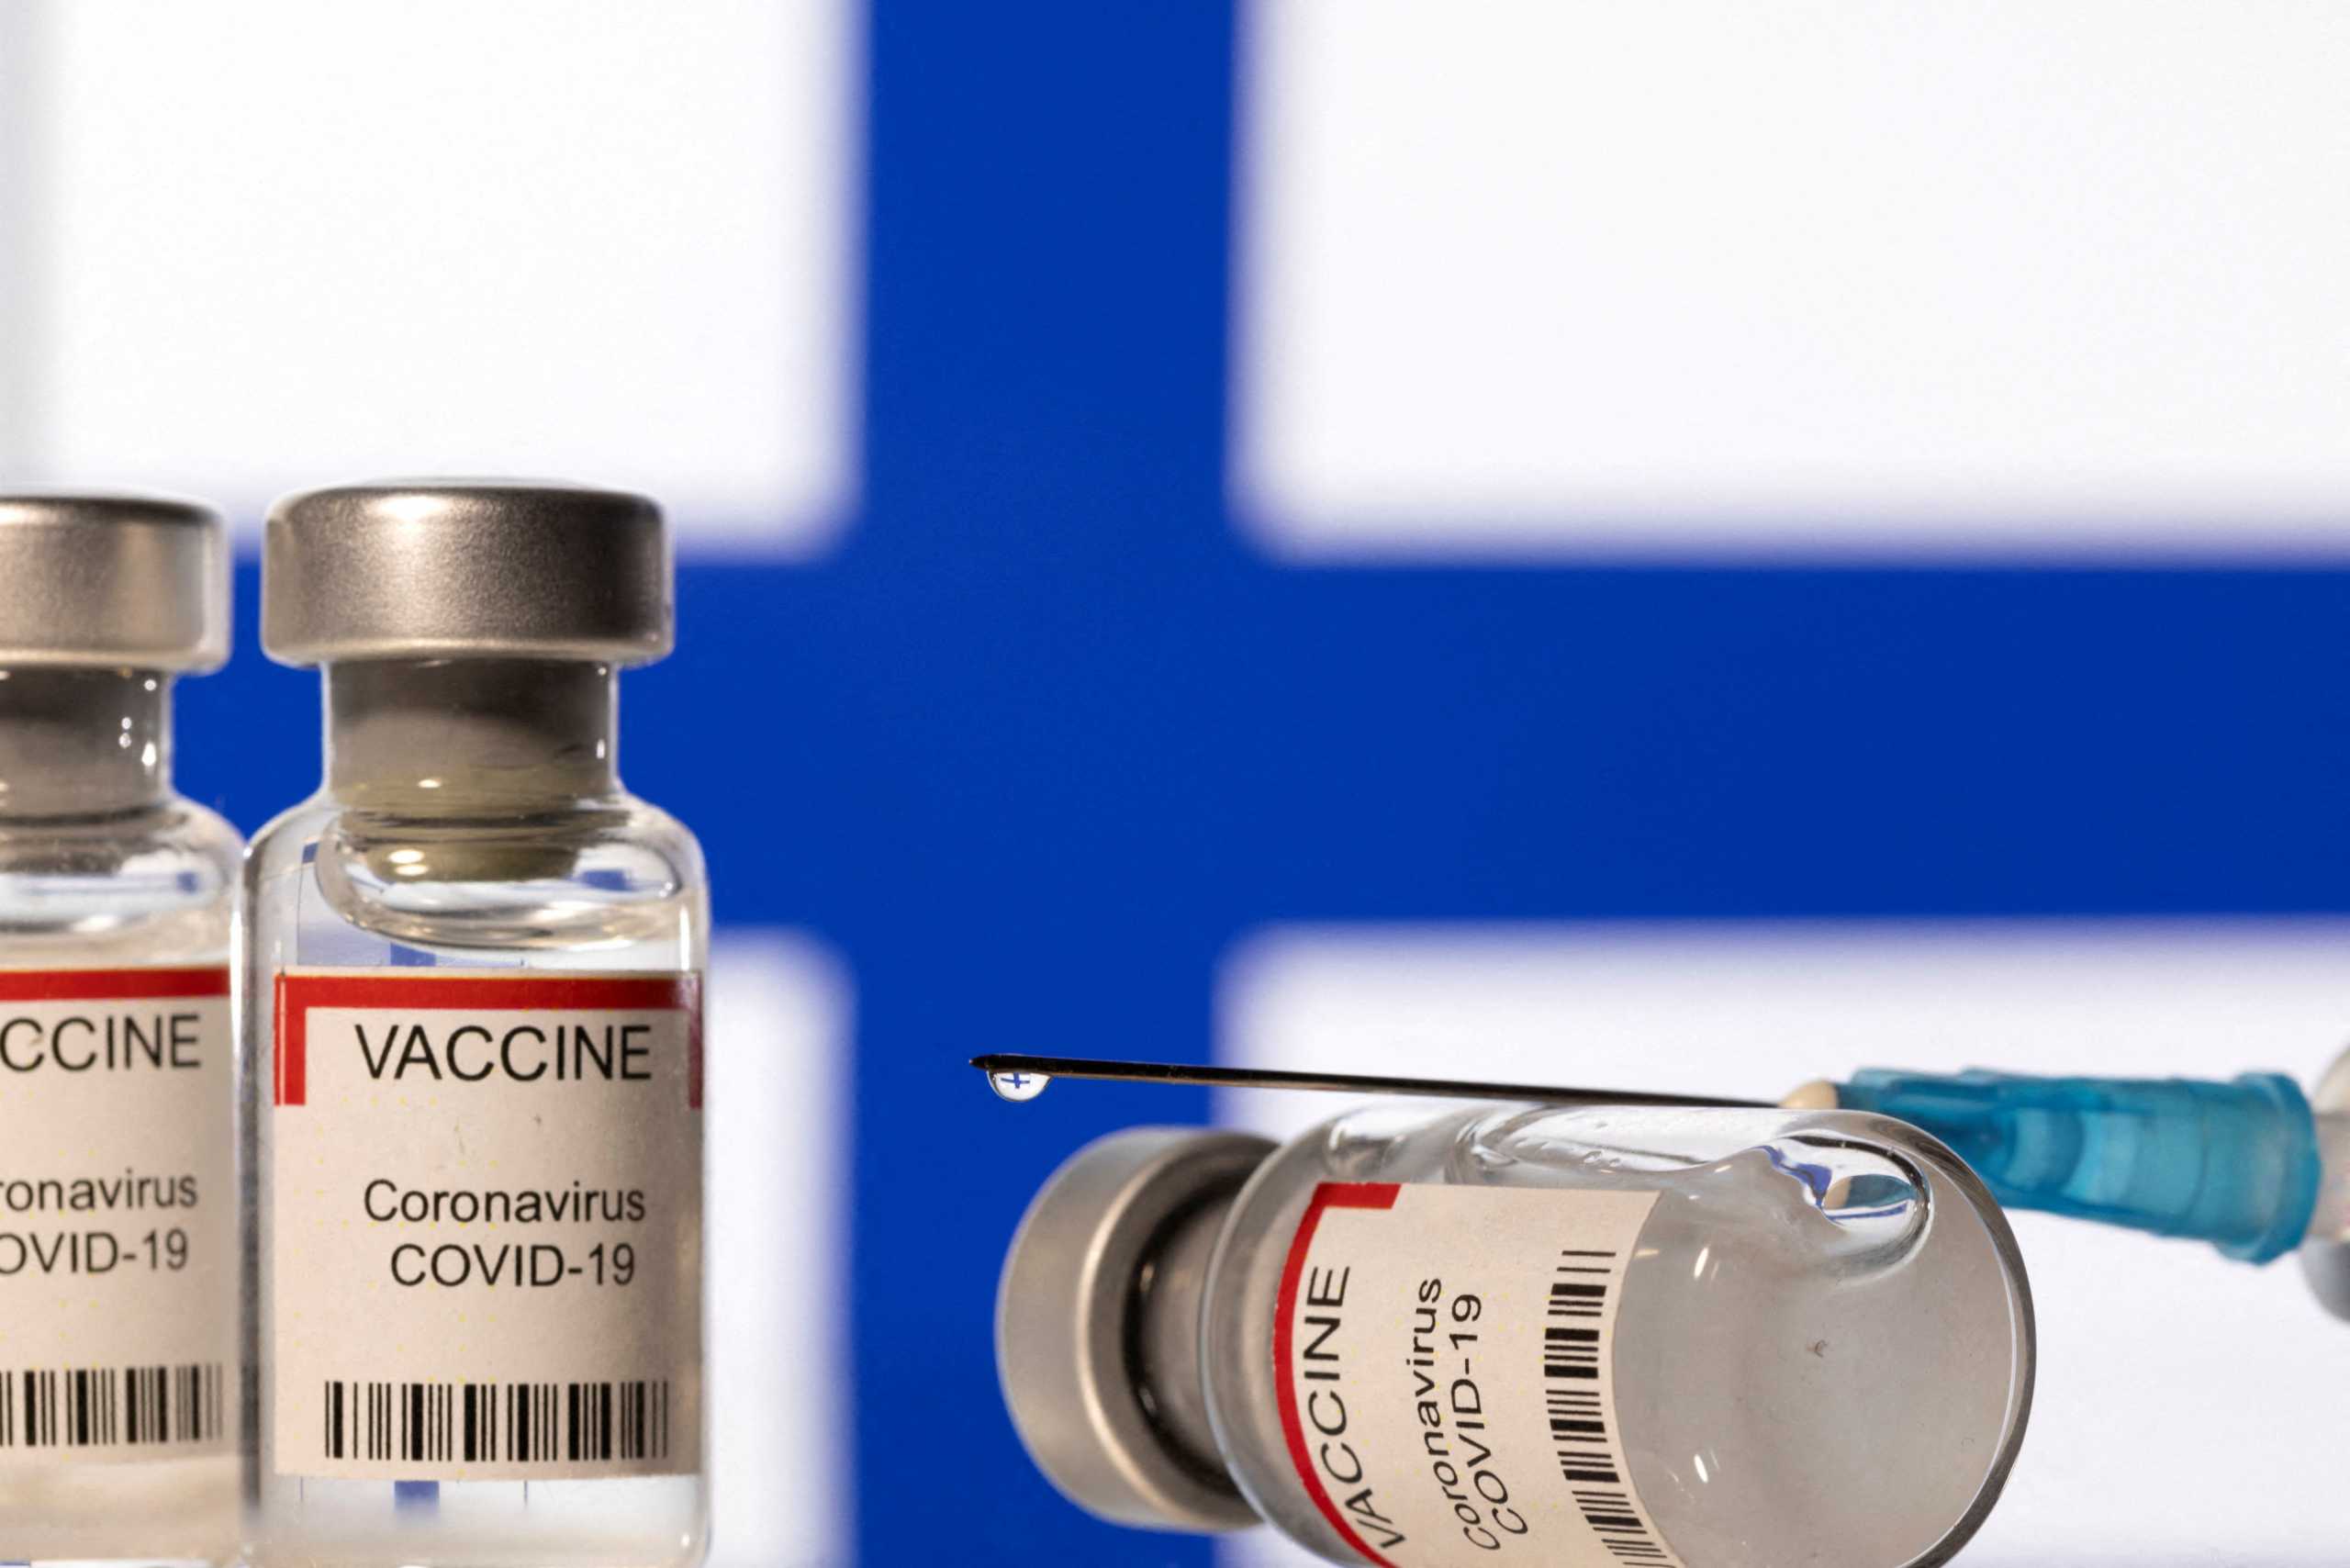 4η δόση εμβολίου: «Δε μπορούμε να χορηγούμε συνεχώς αναμνηστικές δόσεις κάθε 3 – 4 μήνες» λέει ο ΕΜΑ